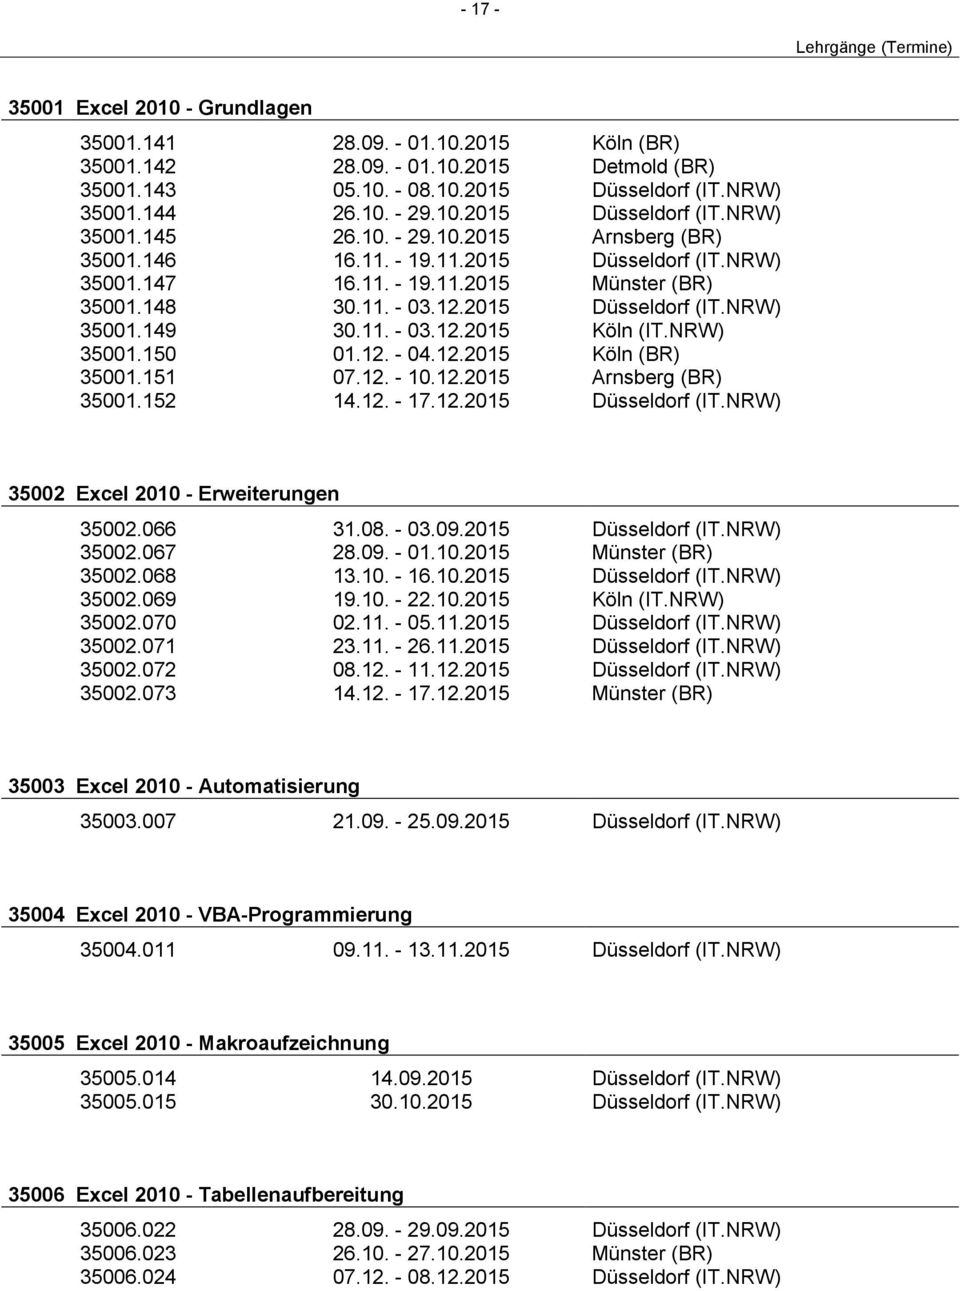 NRW) 35001.150 01.12. - 04.12.2015 Köln (BR) 35001.151 07.12. - 10.12.2015 Arnsberg (BR) 35001.152 14.12. - 17.12.2015 Düsseldorf (IT.NRW) 35002 Excel 2010 - Erweiterungen 35002.066 31.08. - 03.09.